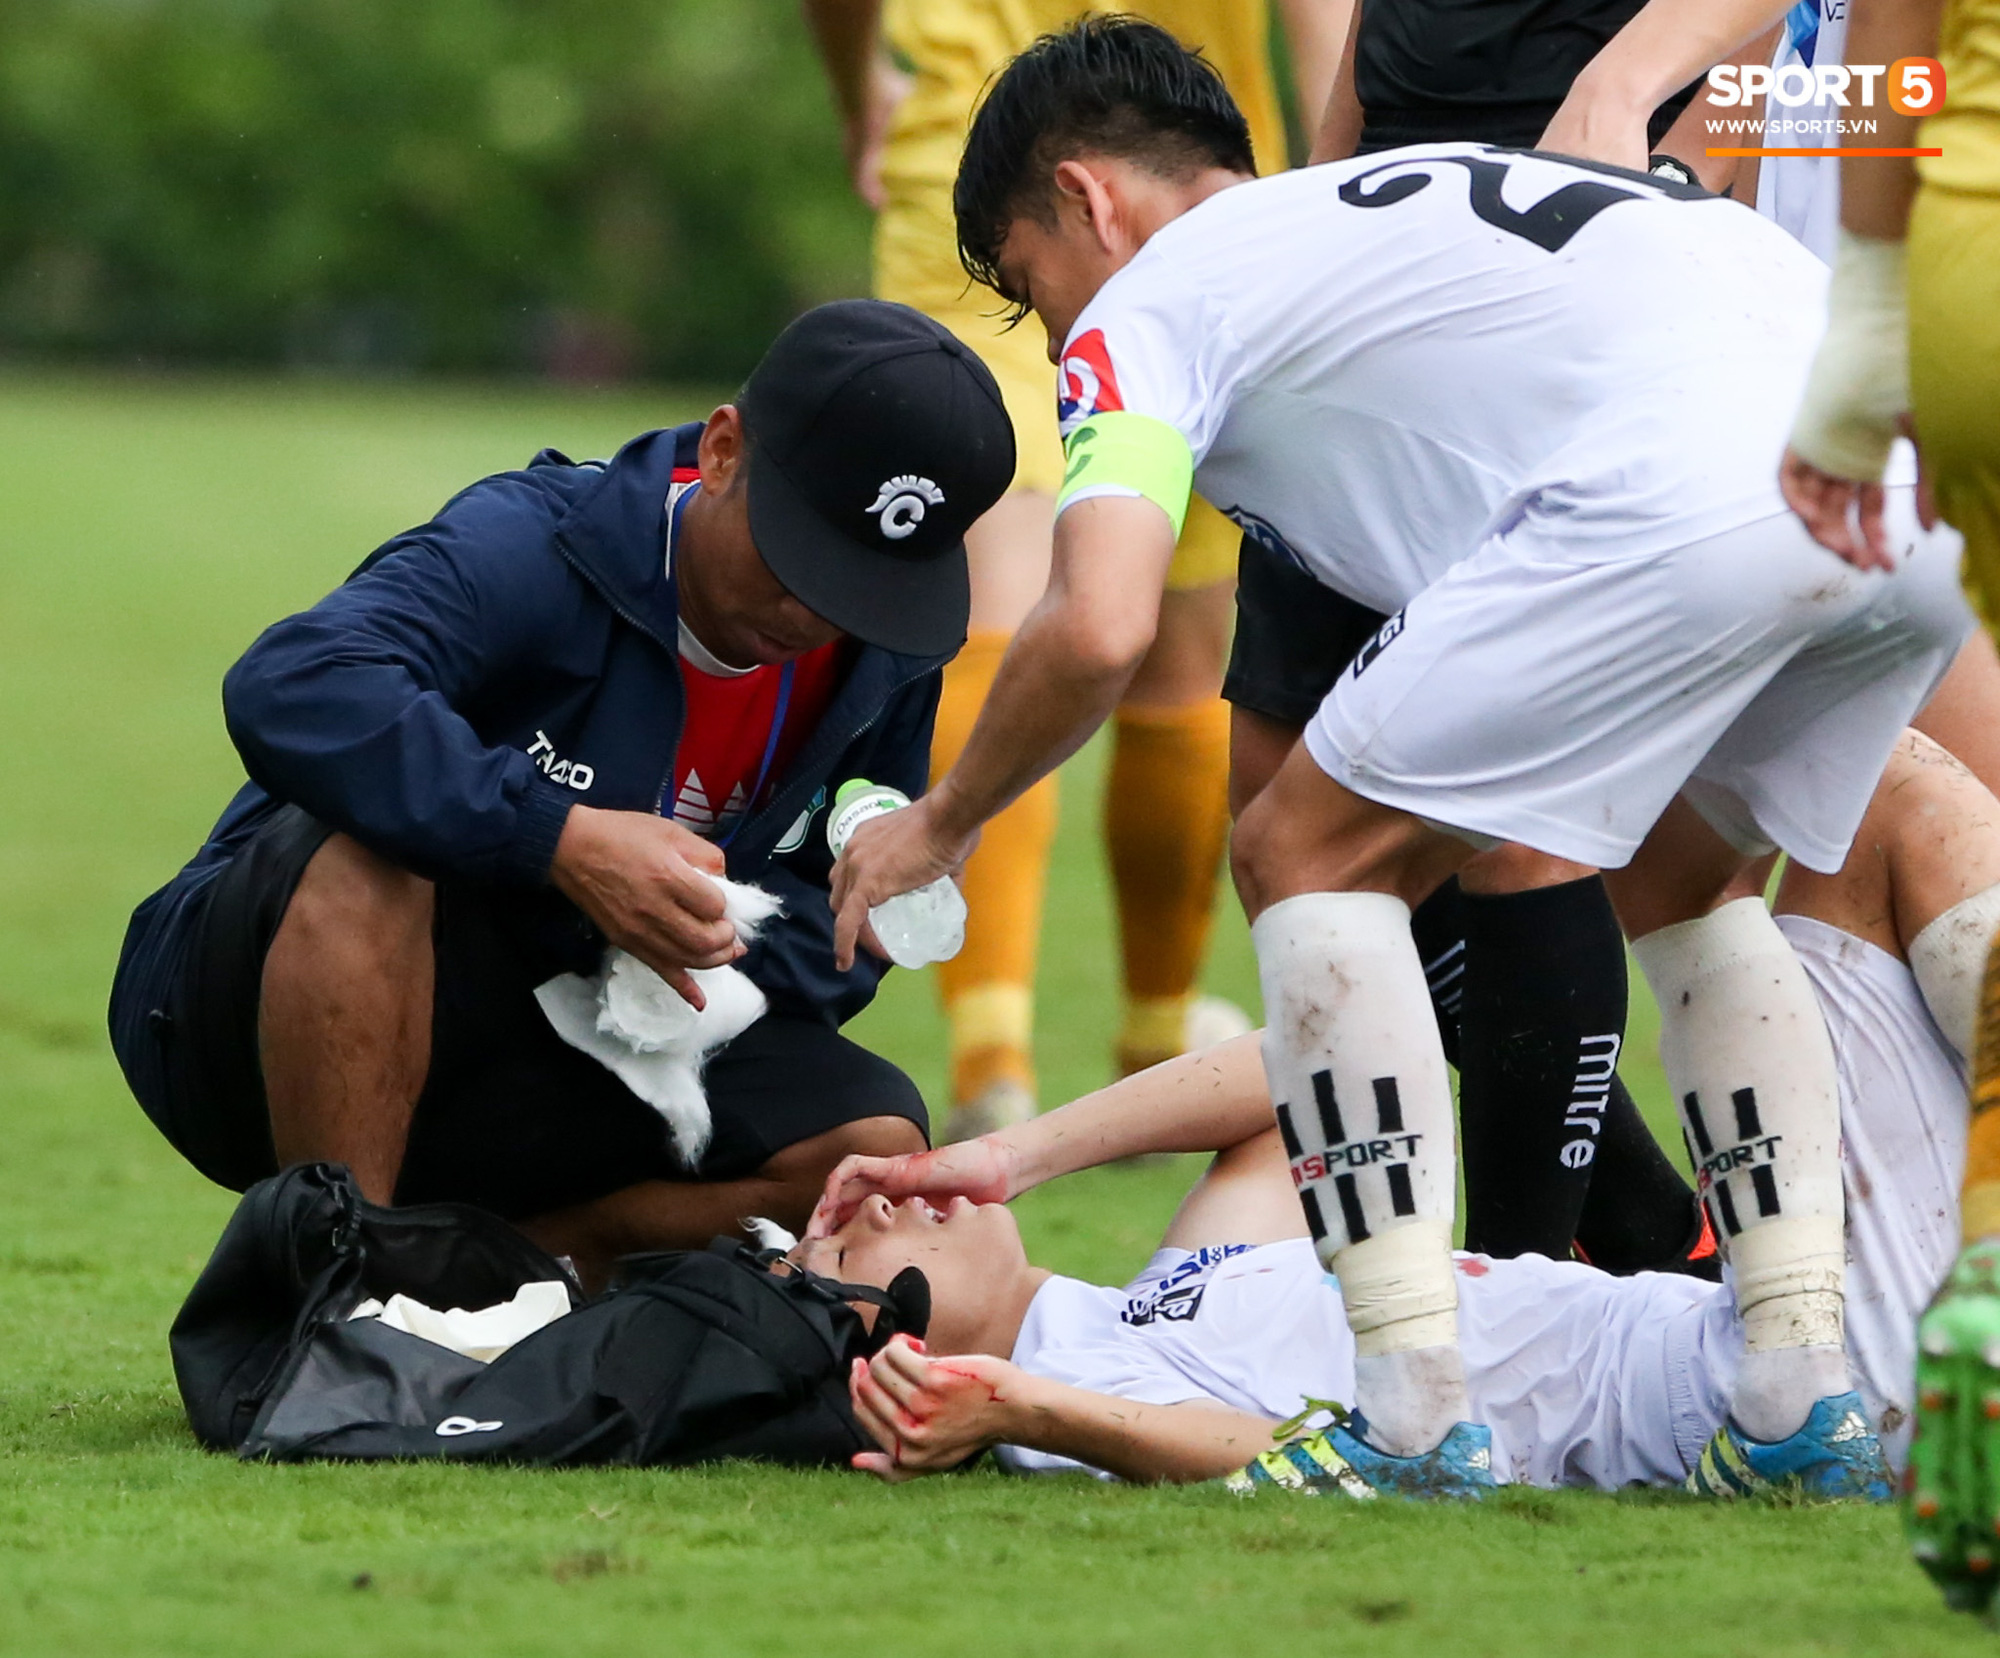 Cầu thủ trẻ HAGL chảy máu đầu đầm đìa sau va chạm vẫn cố thi đấu hết trận - Ảnh 2.